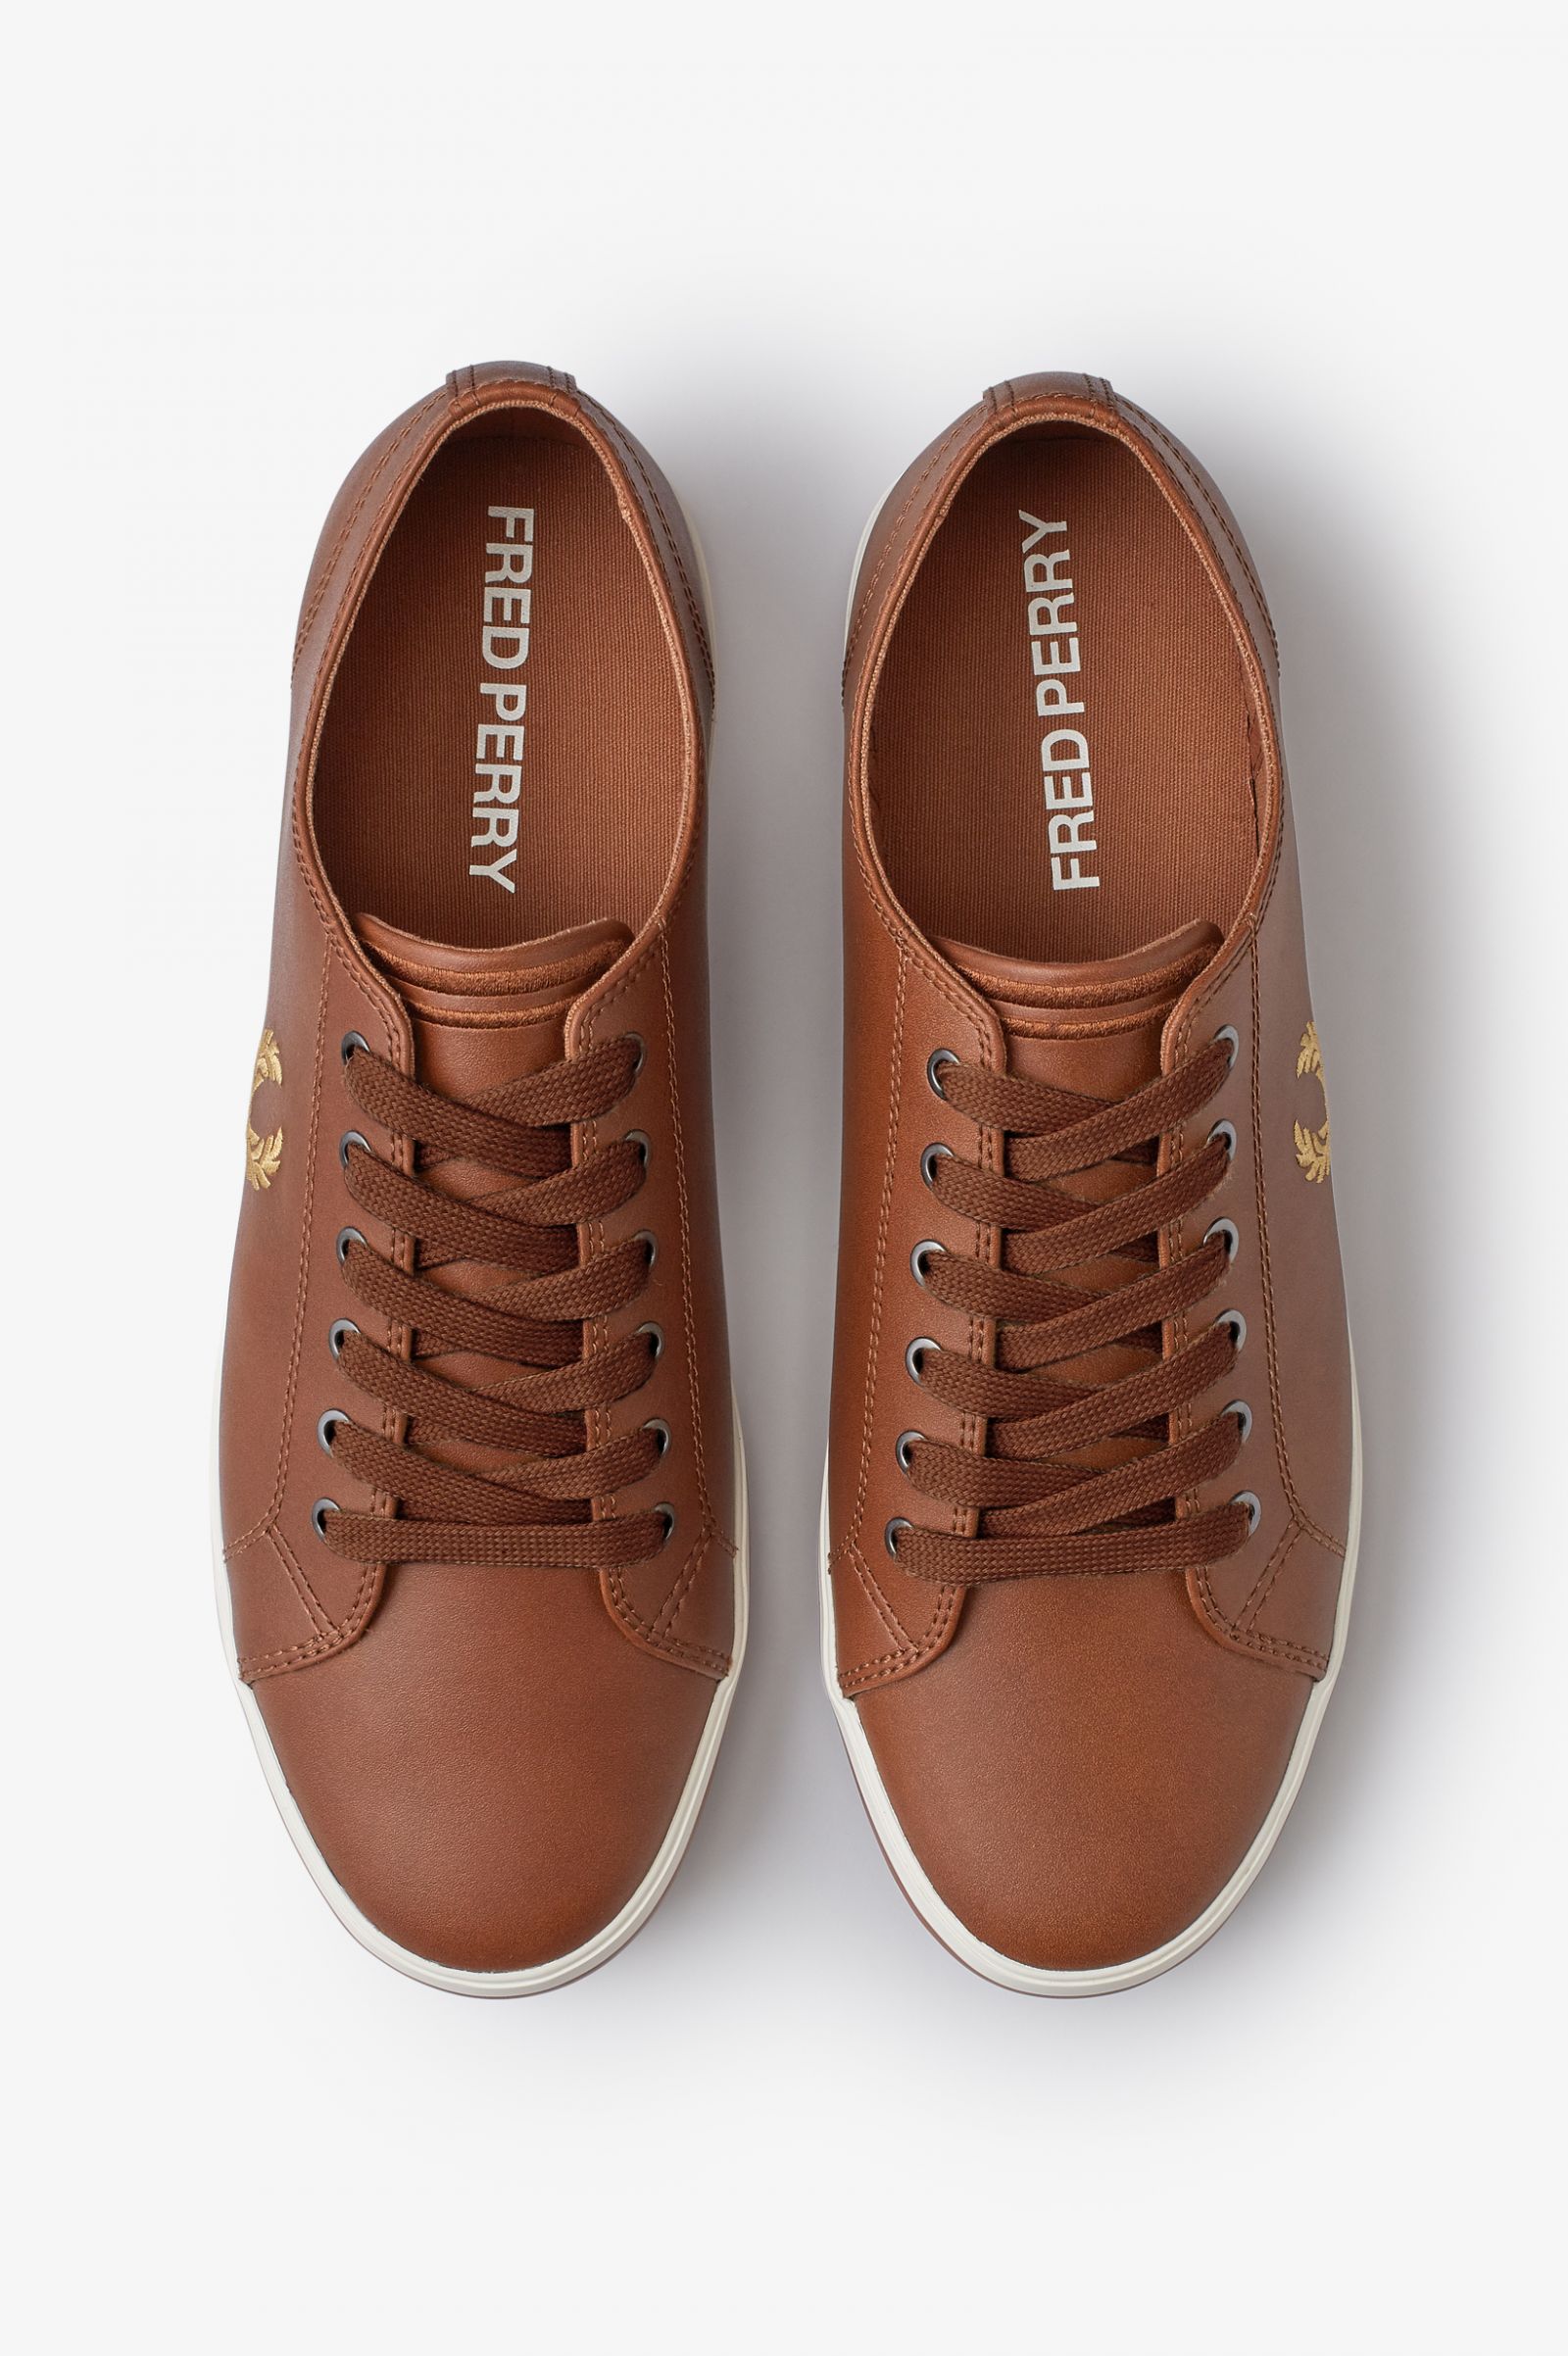 Kingston Leather - Tan | Men's Footwear 